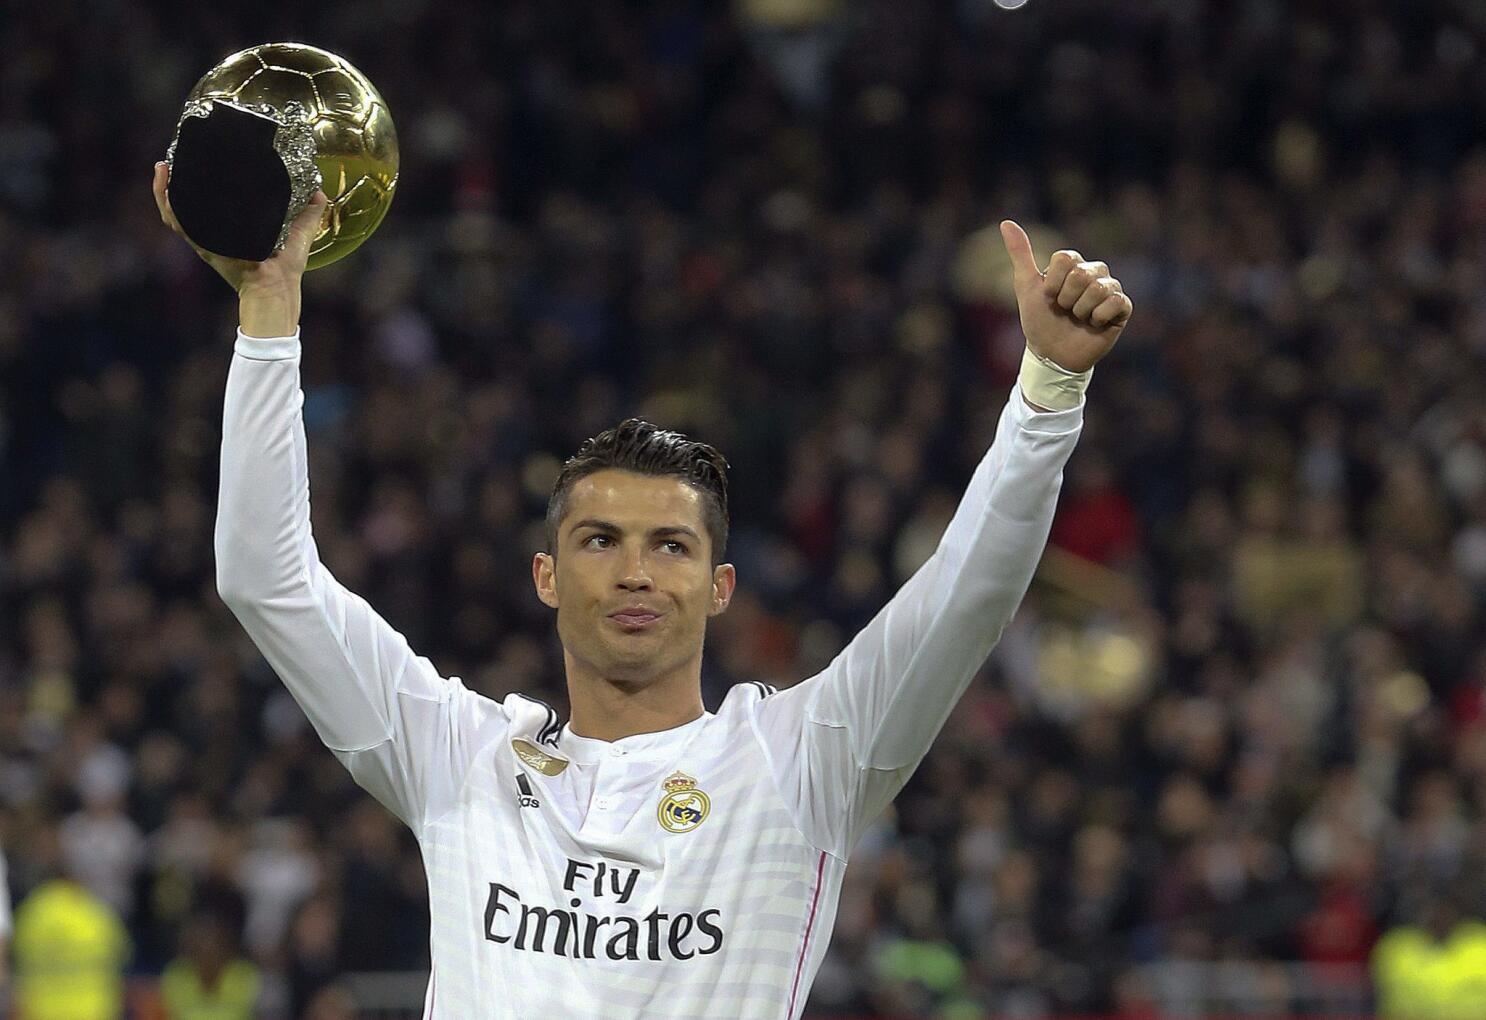 Ronaldo gana su cuarto Balón de Oro - San Diego Union-Tribune en Español